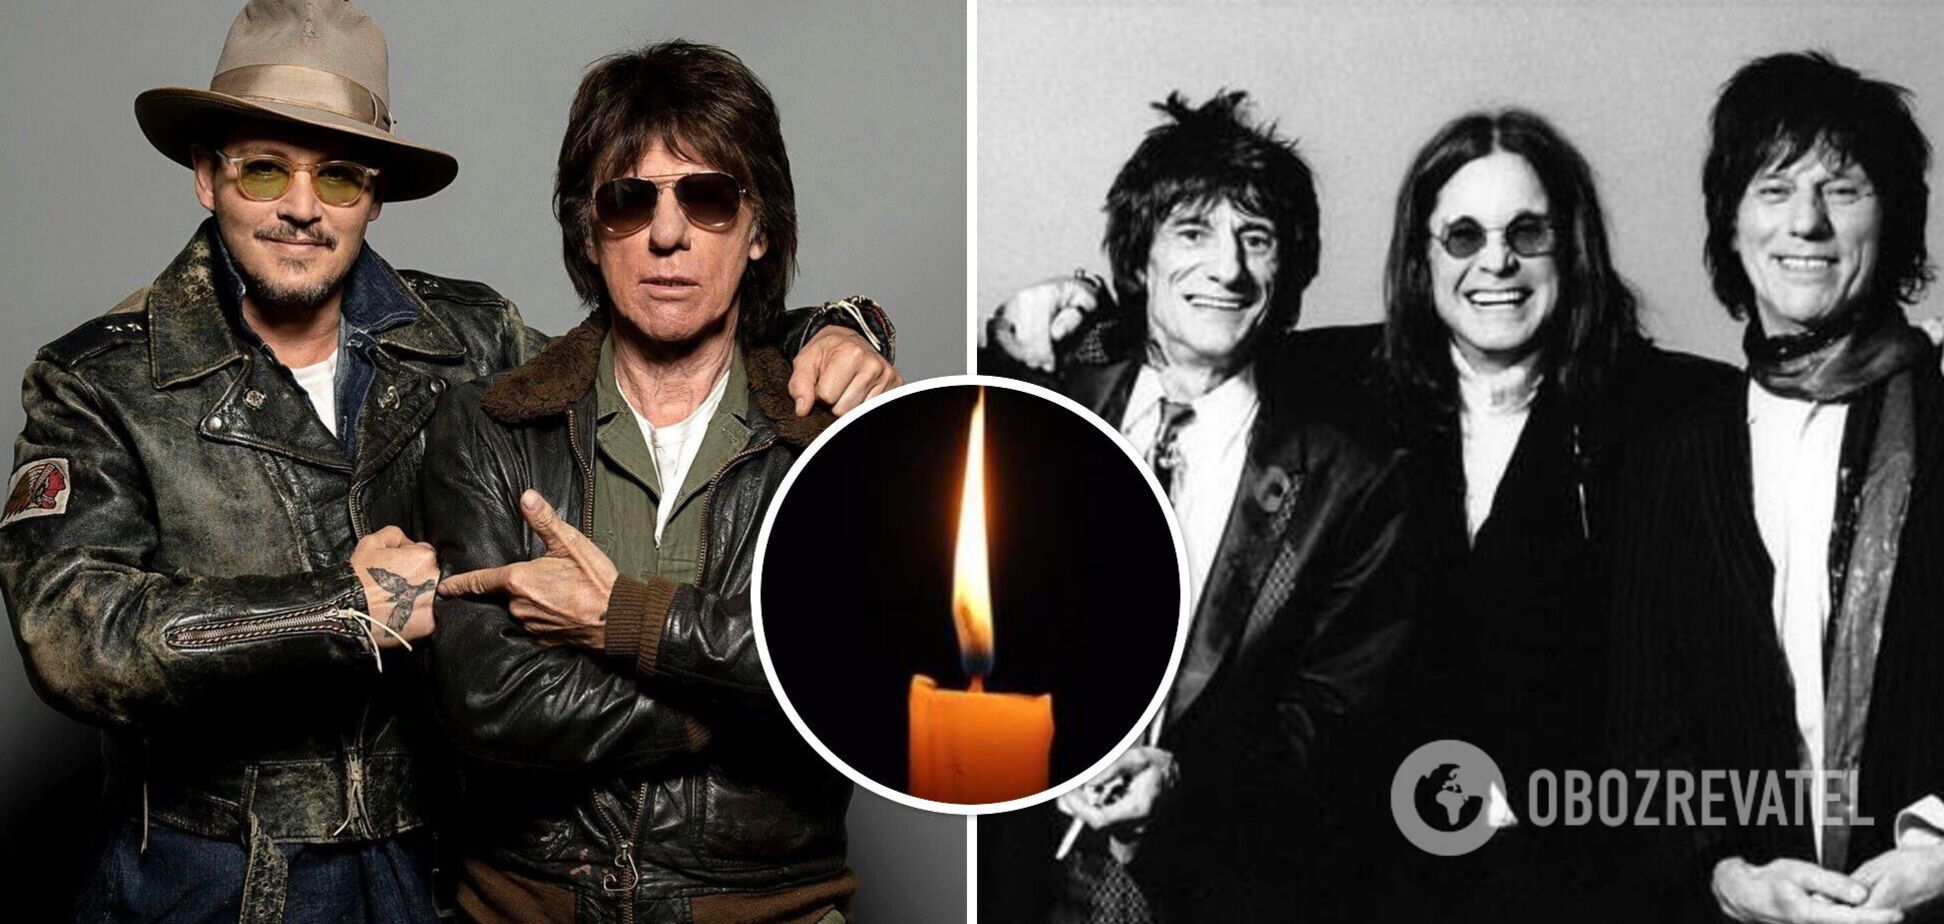 Помер легендарний рок-гітарист Джефф Бек: Оззі Осборн, Джонні Депп та Мік Джаггер оплакують втрату